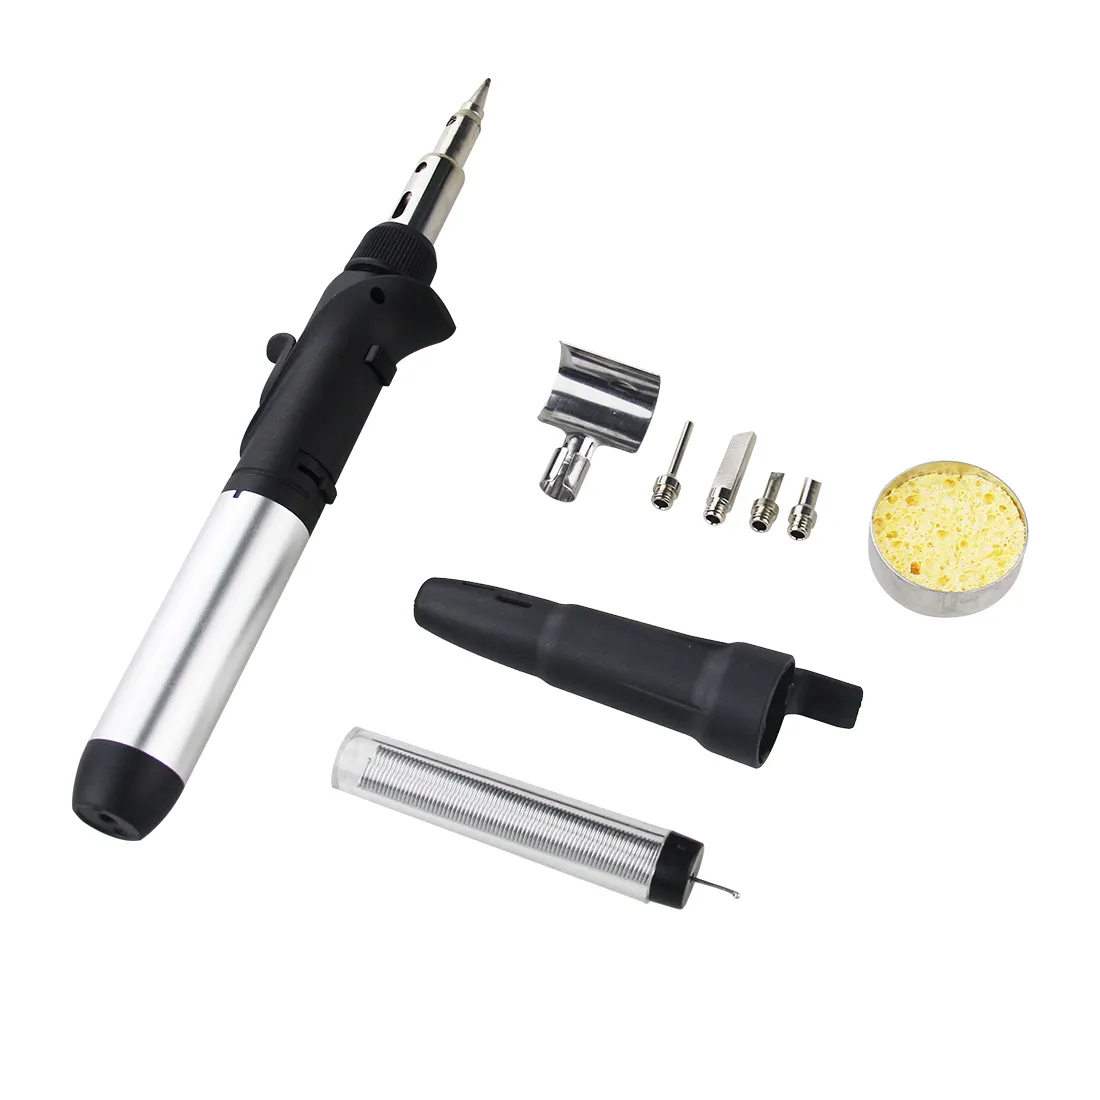 Mini torche de soudage sans fil multifonction butane kit de stylos à souder au gaz sans fil 6 en 1 10 en 1